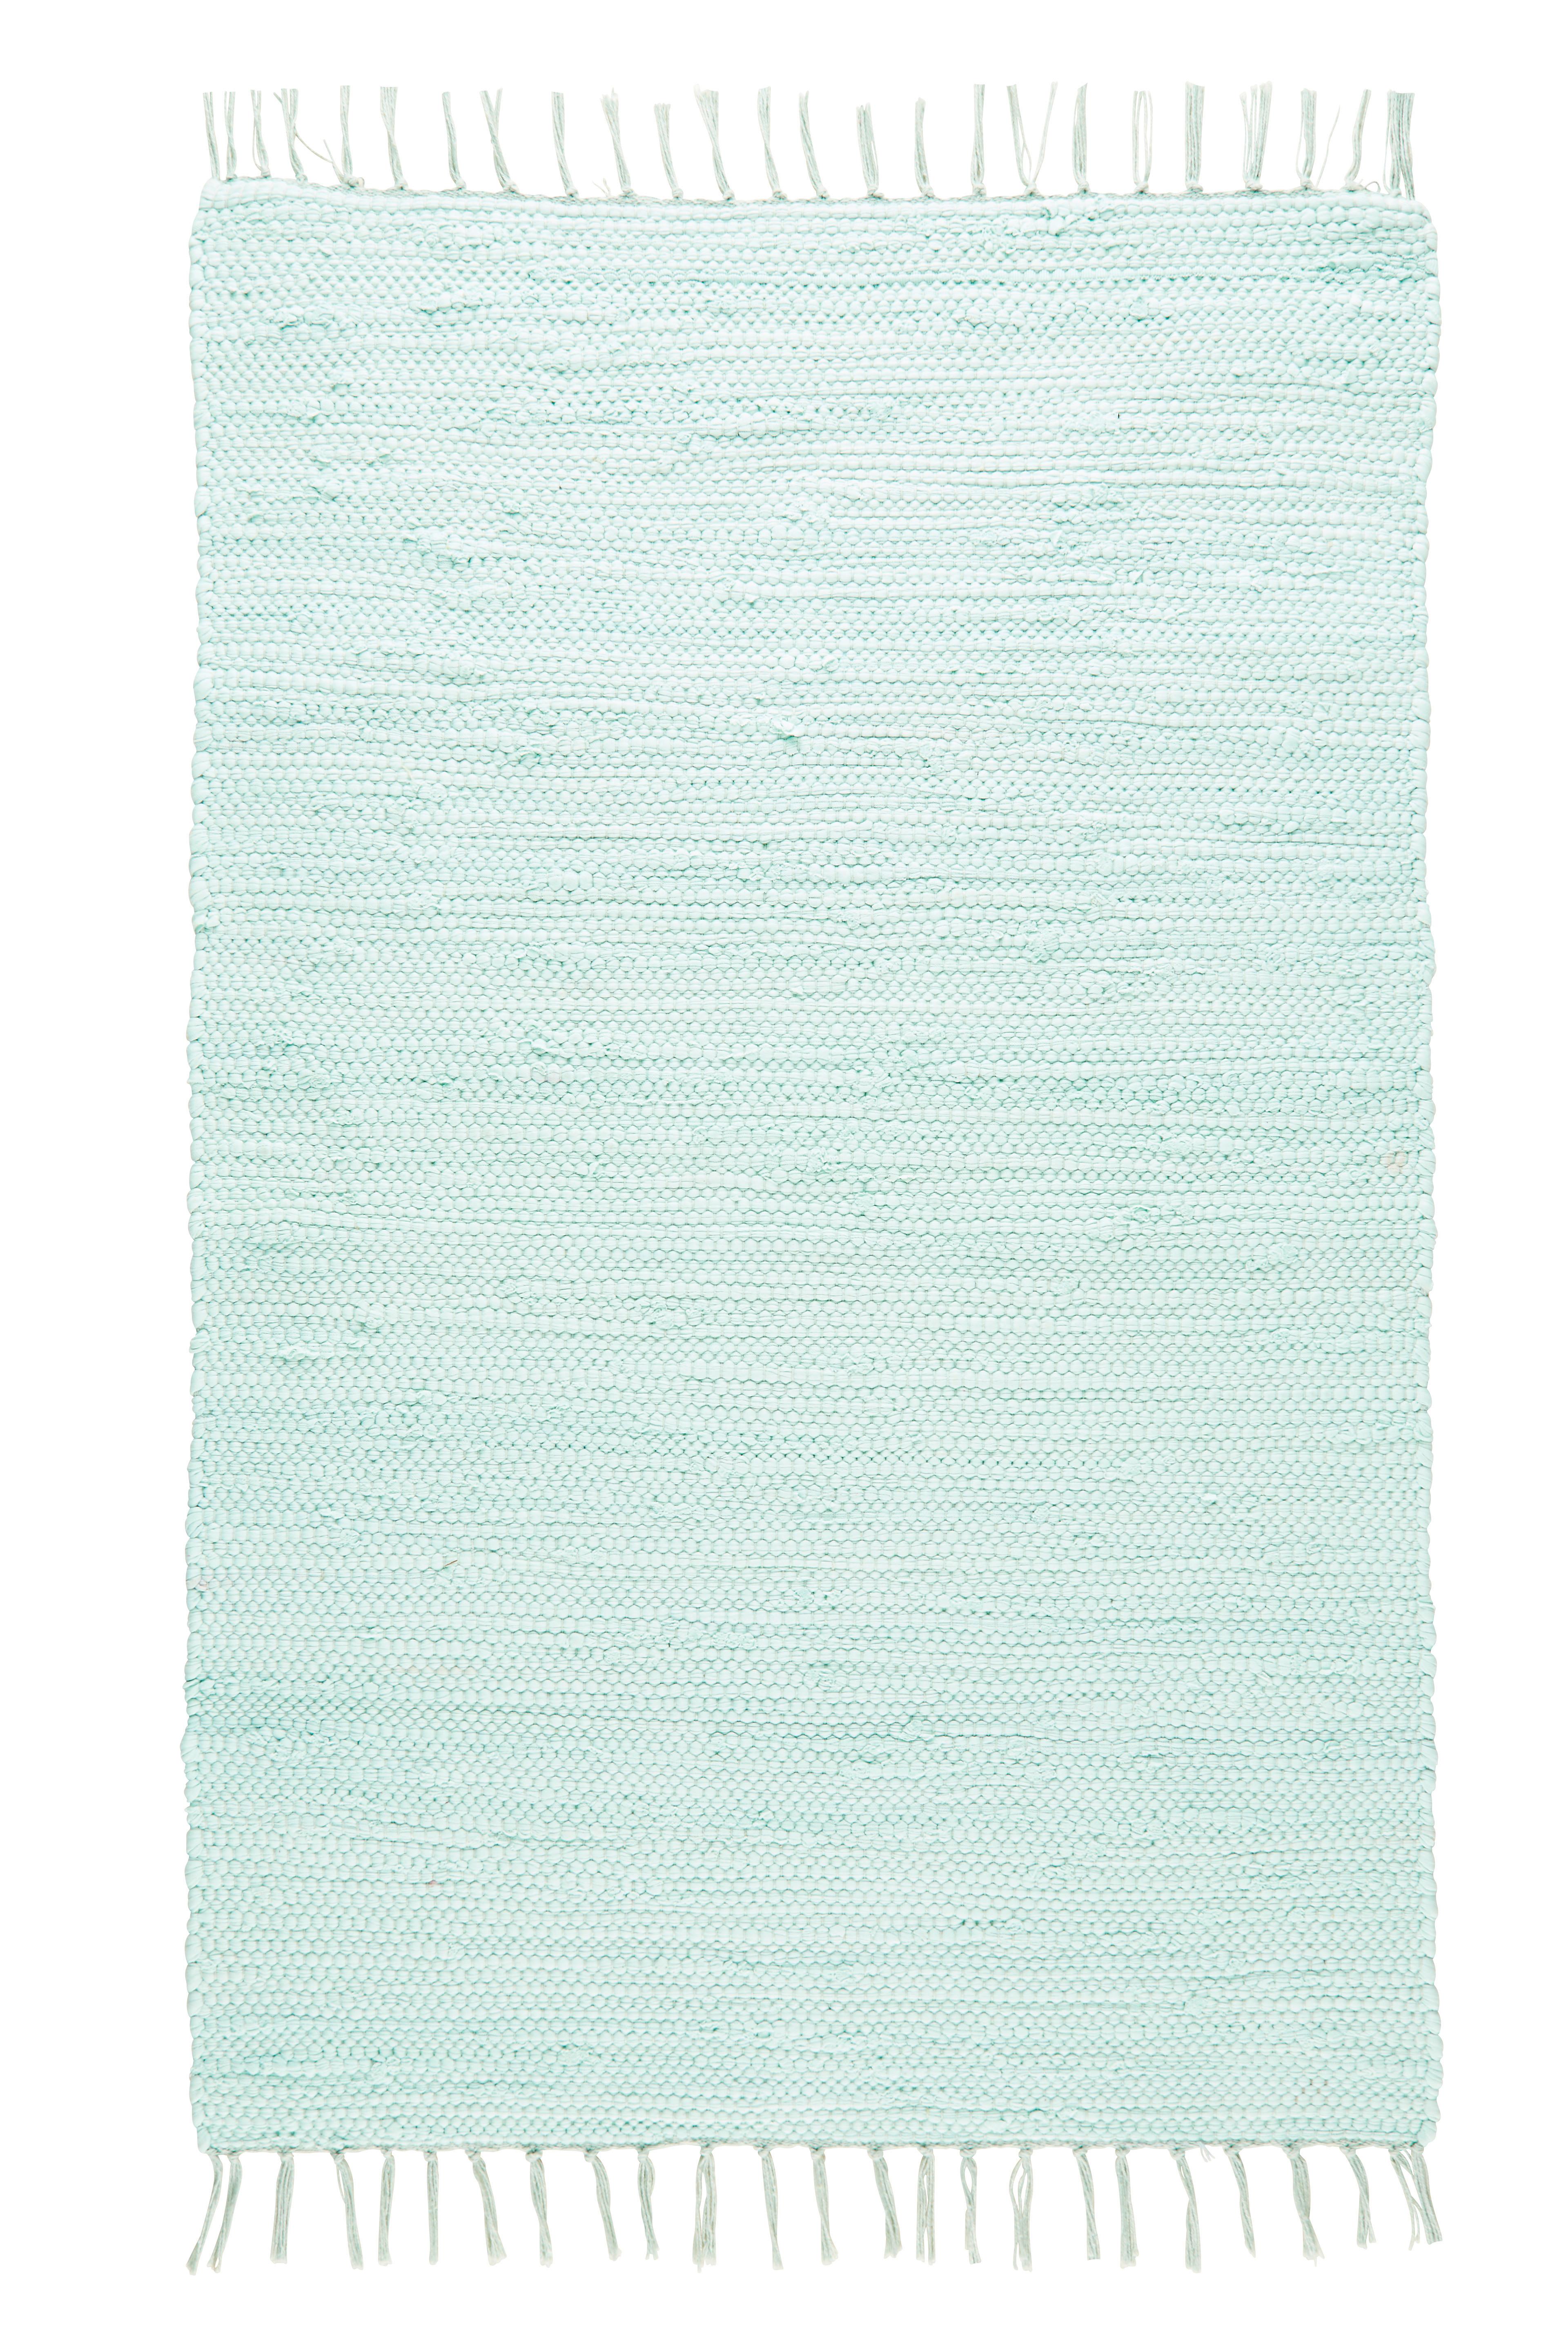 Hadrový Koberec Julia 2, 70/130cm, Sv. Zelená - světle zelená, Romantický / Rustikální, textil (70/130cm) - Modern Living